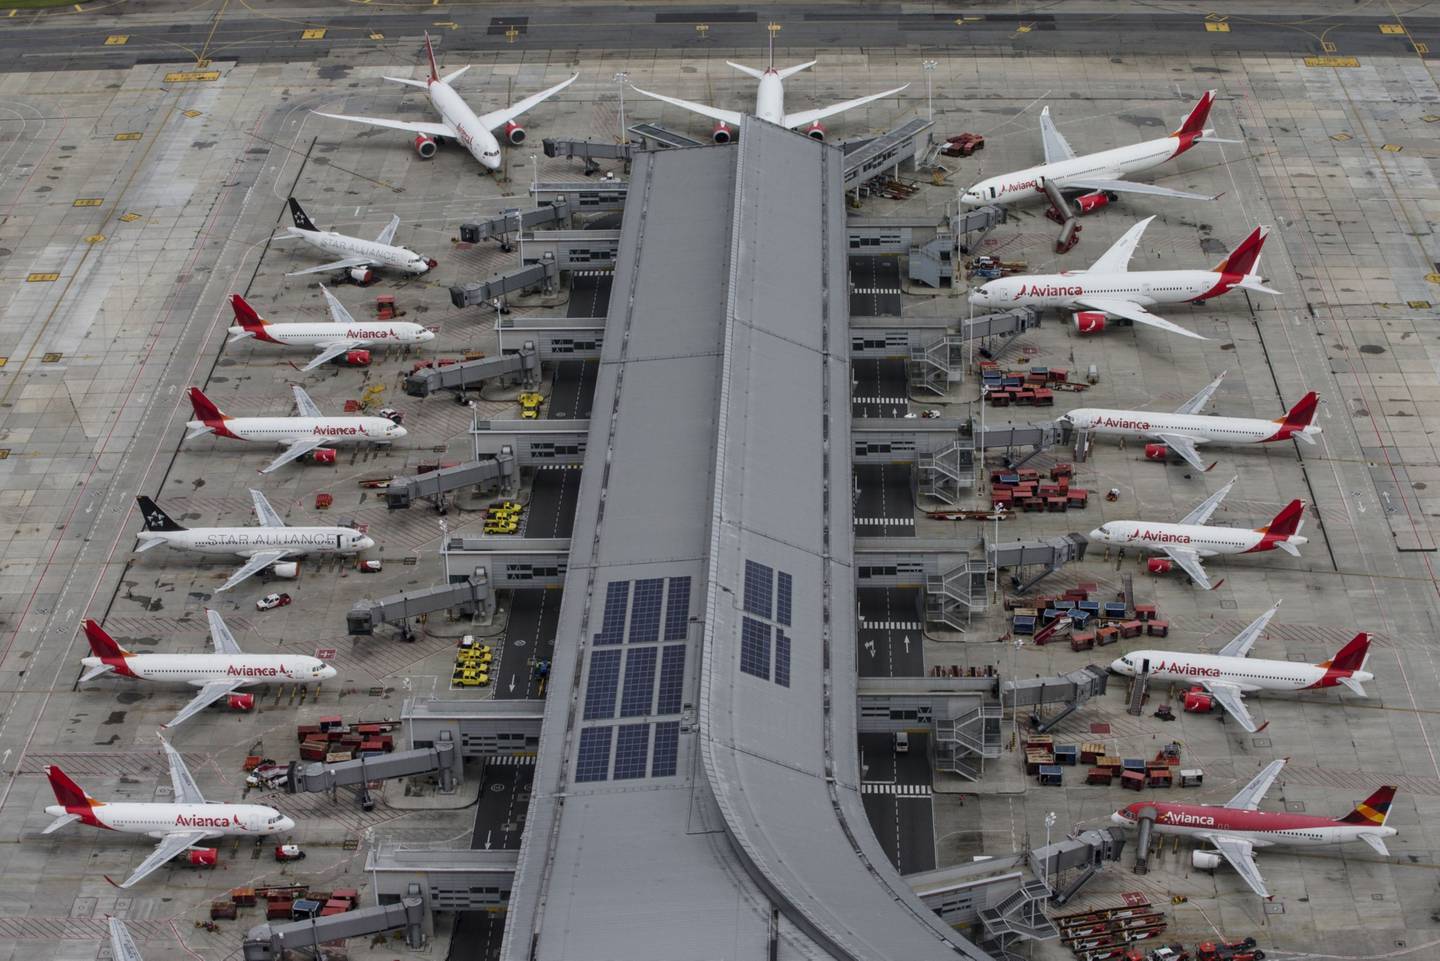 Aviones de Avianca Holdings SA estacionados en el Aeropuerto Internacional El Dorado en esta fotografía aérea tomada sobre Bogotá, Colombia.